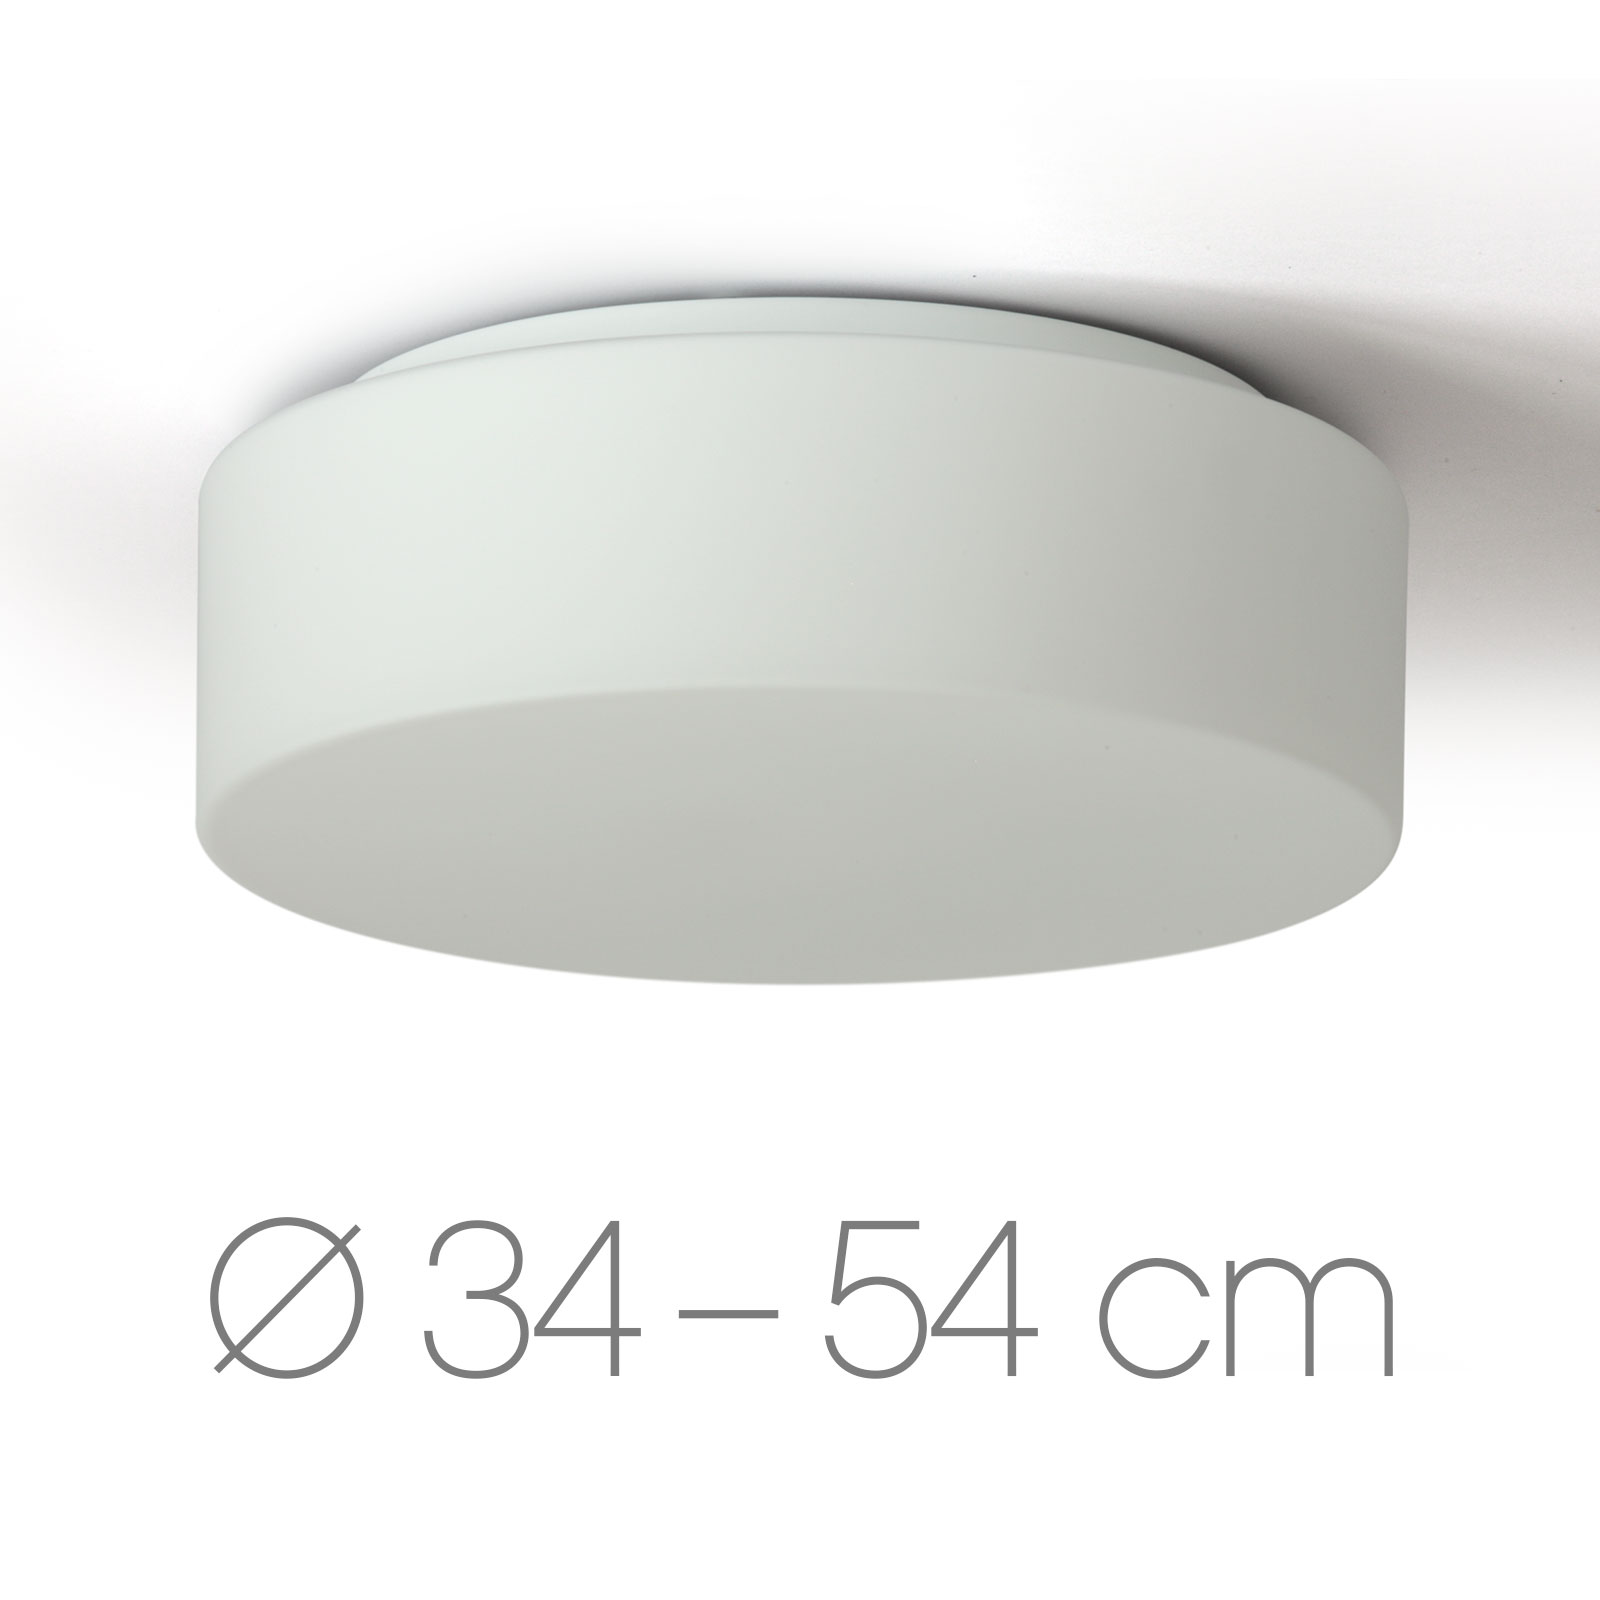 Schlichte Scheibe: Deckenleuchte Opalglas ERIK, Ø 34 bis 54 cm